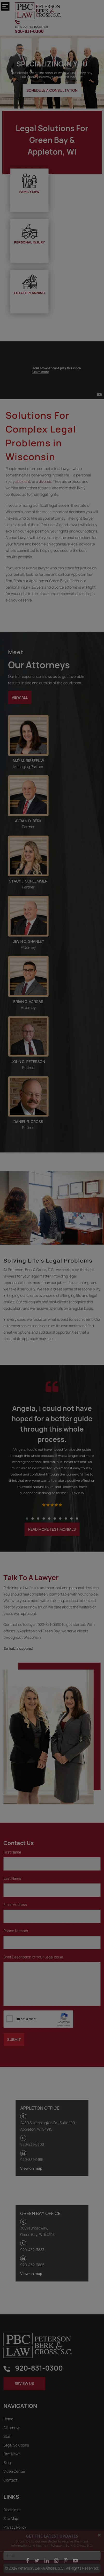 Peterson Berk & Cross - Green Bay WI Lawyers